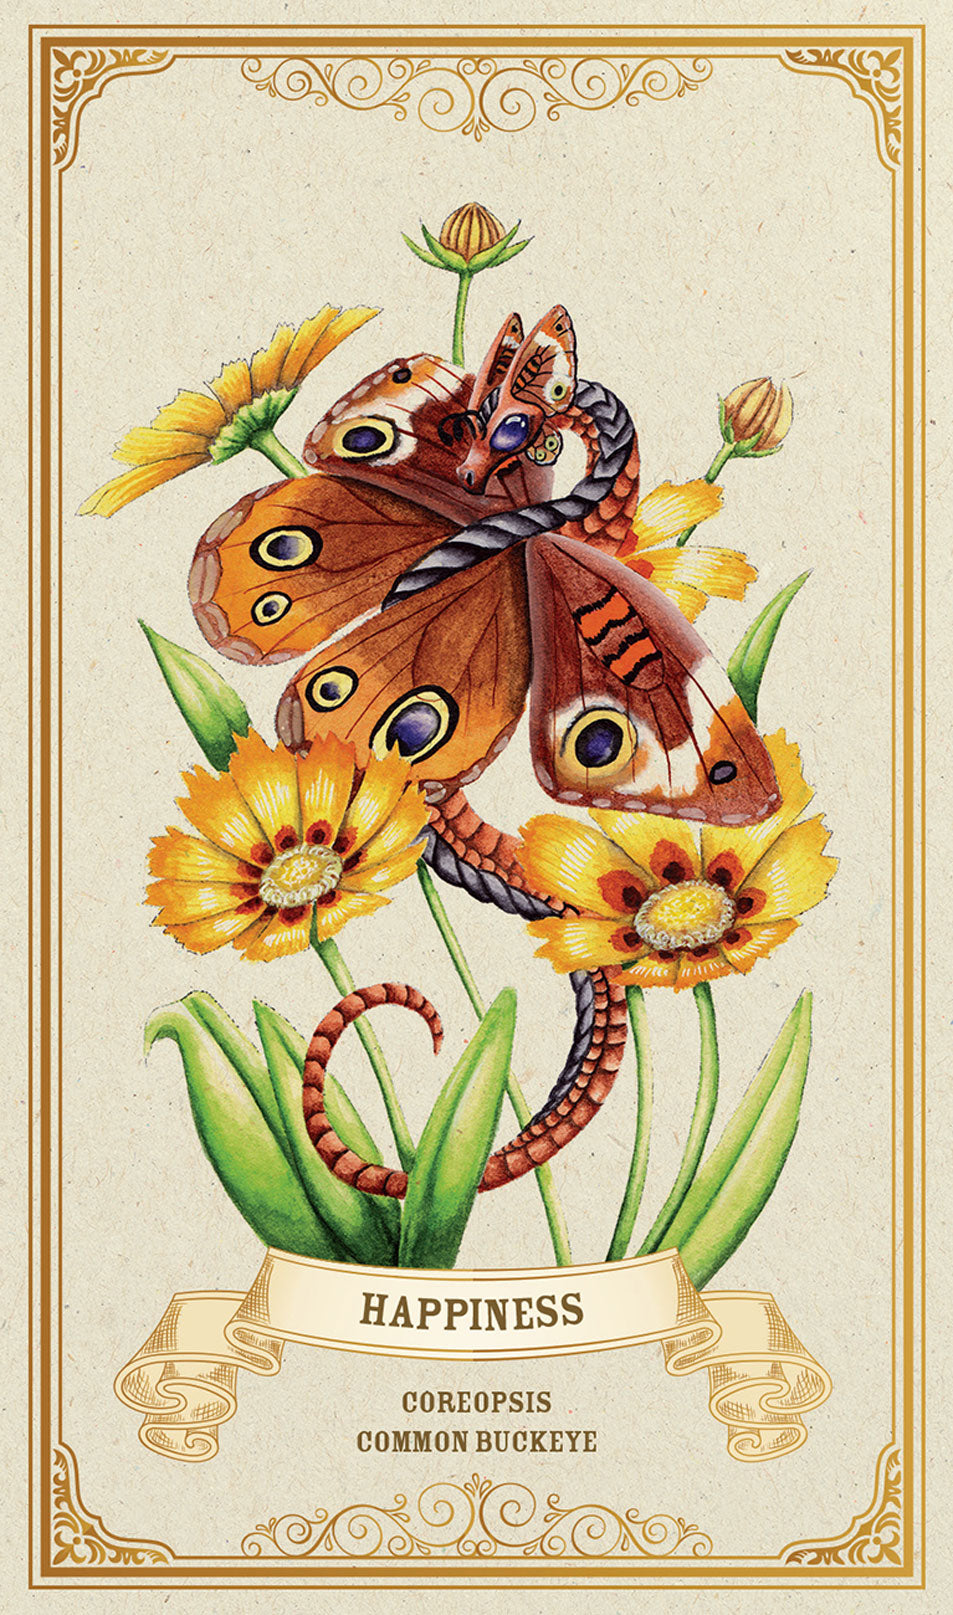 Happiness (Coreopsis, Common Buckeye) card